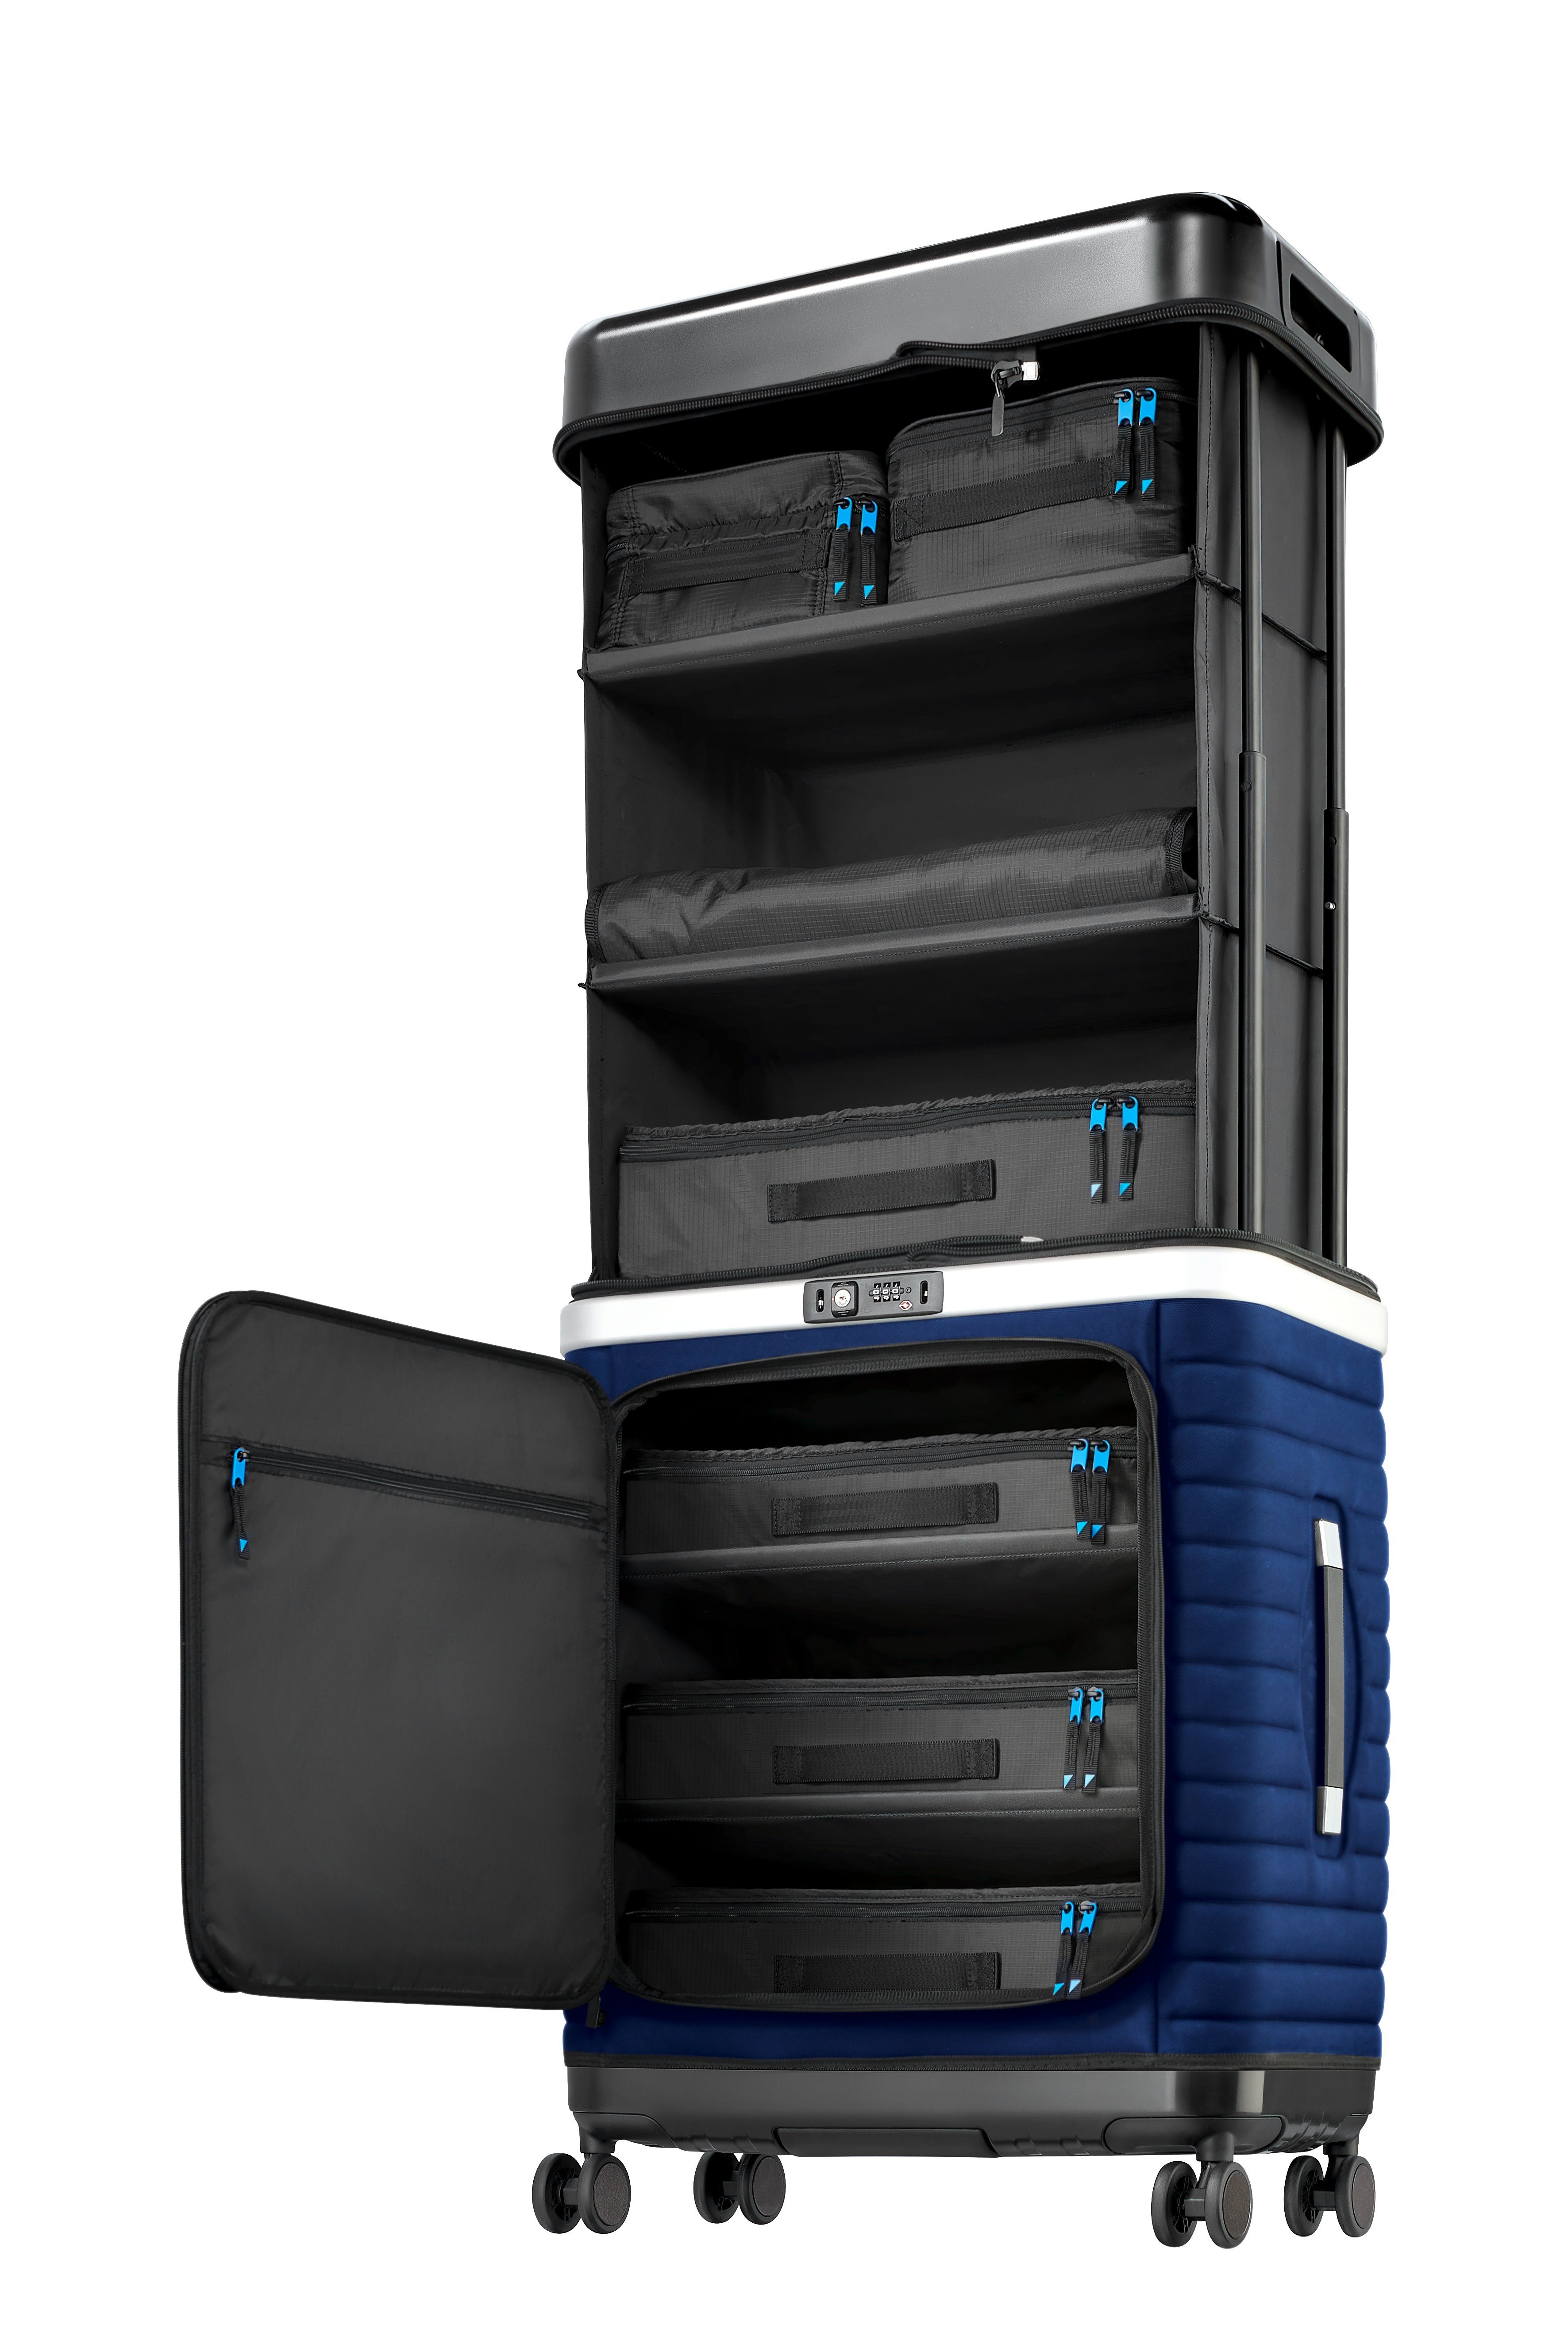 System Up Up Case Mobiler Pull mit GmbH ausziehbarem Pull Suitcase, Pull Koffer Blue Up Kleiderschrank Estate